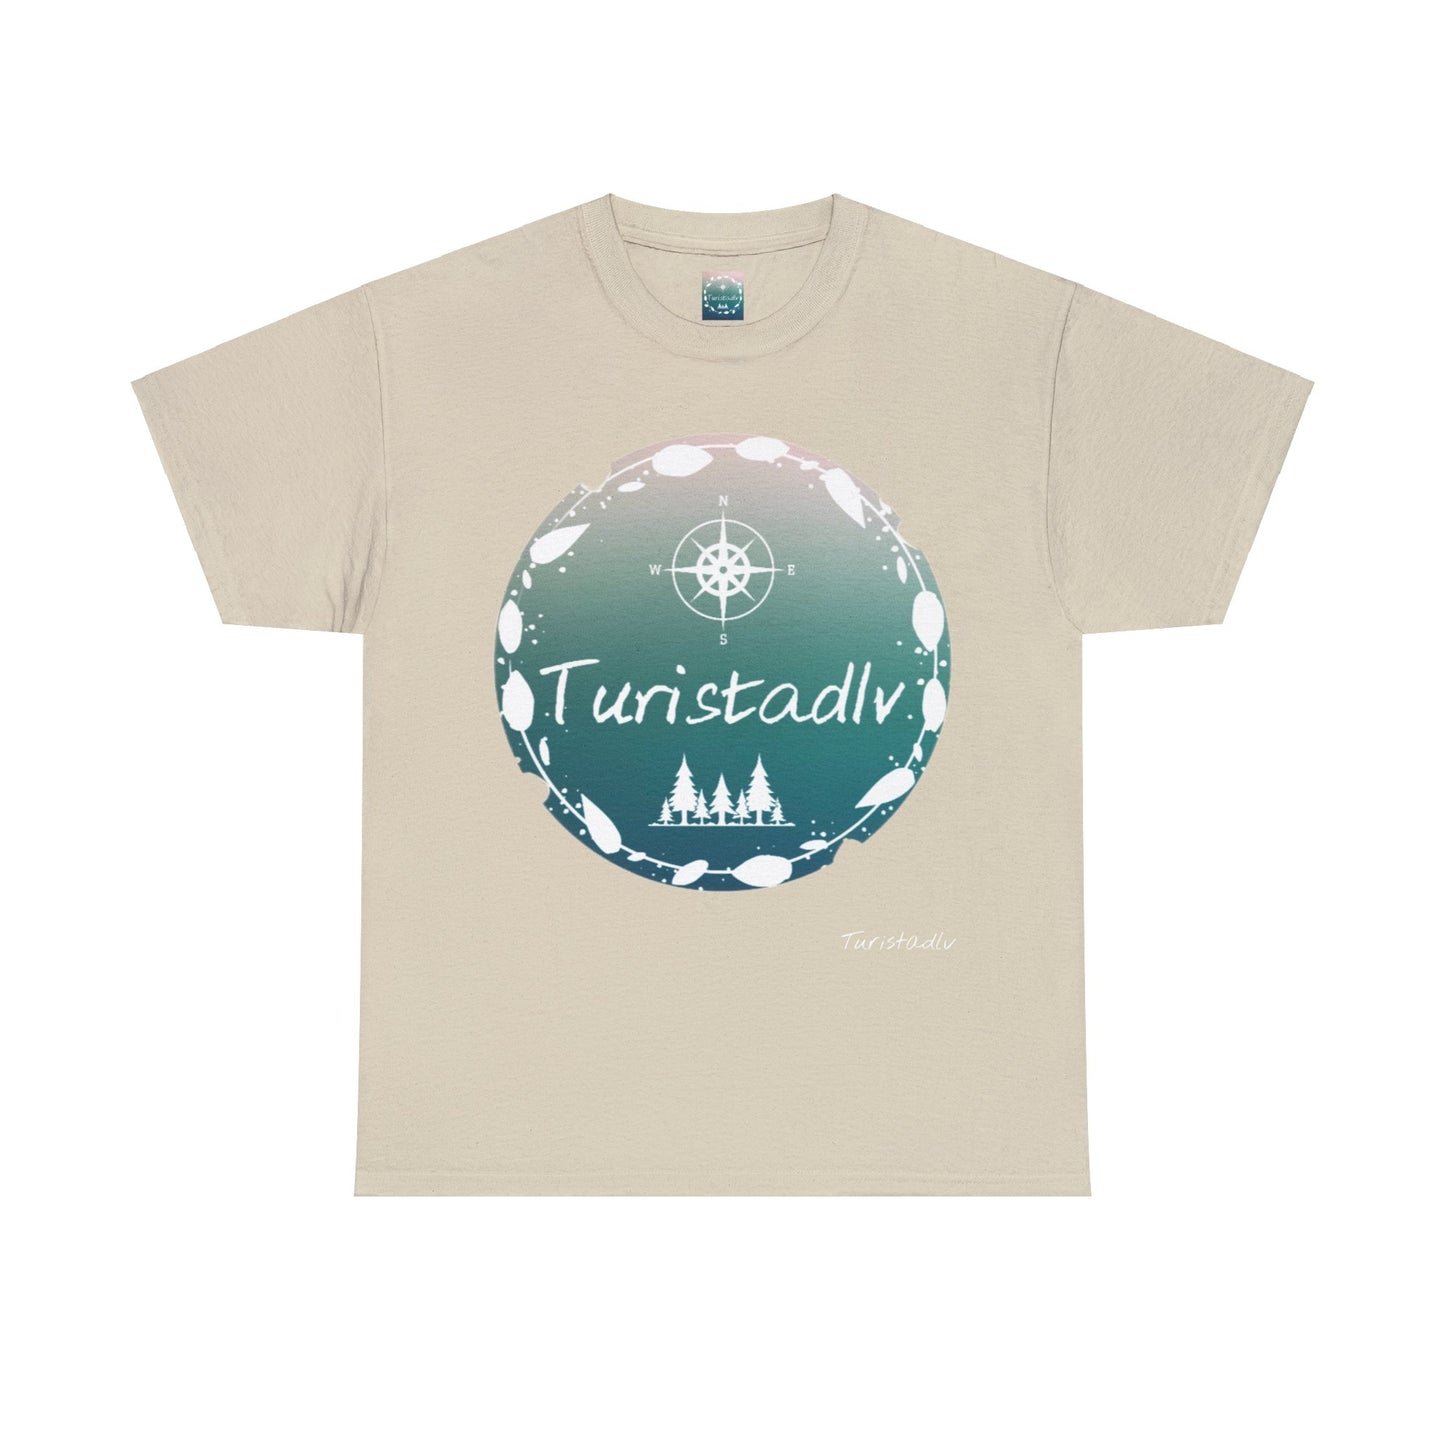 Camiseta de viajero, TURISTADLV, regalo viajero, camiseta de hombre, camiseta de mujer, regalo viajero